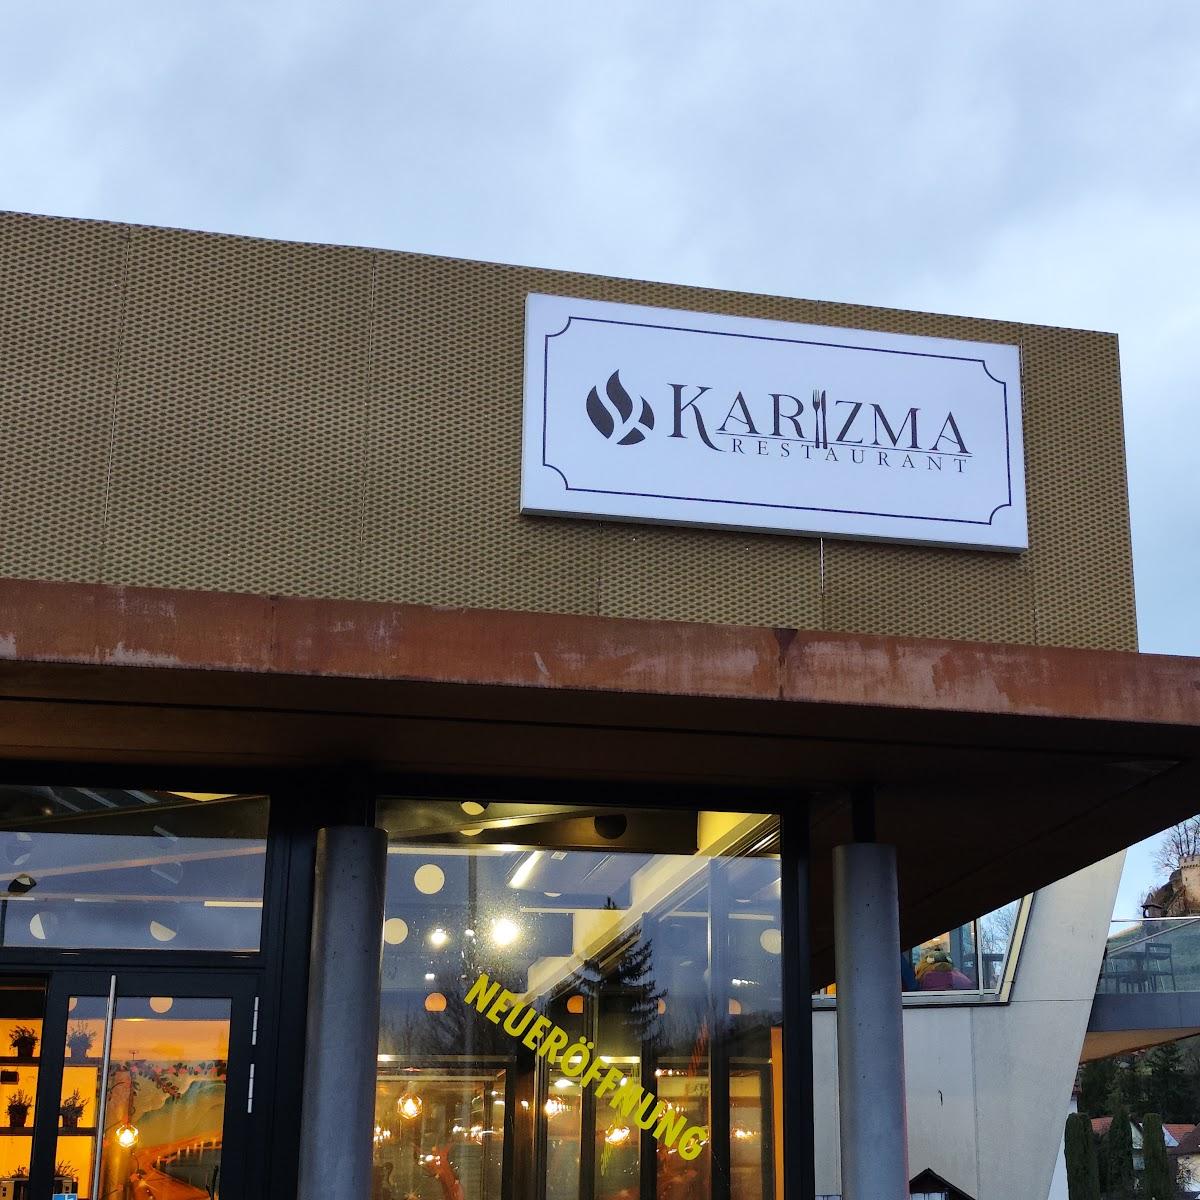 Restaurant "Karizma Restaurant" in Beilstein